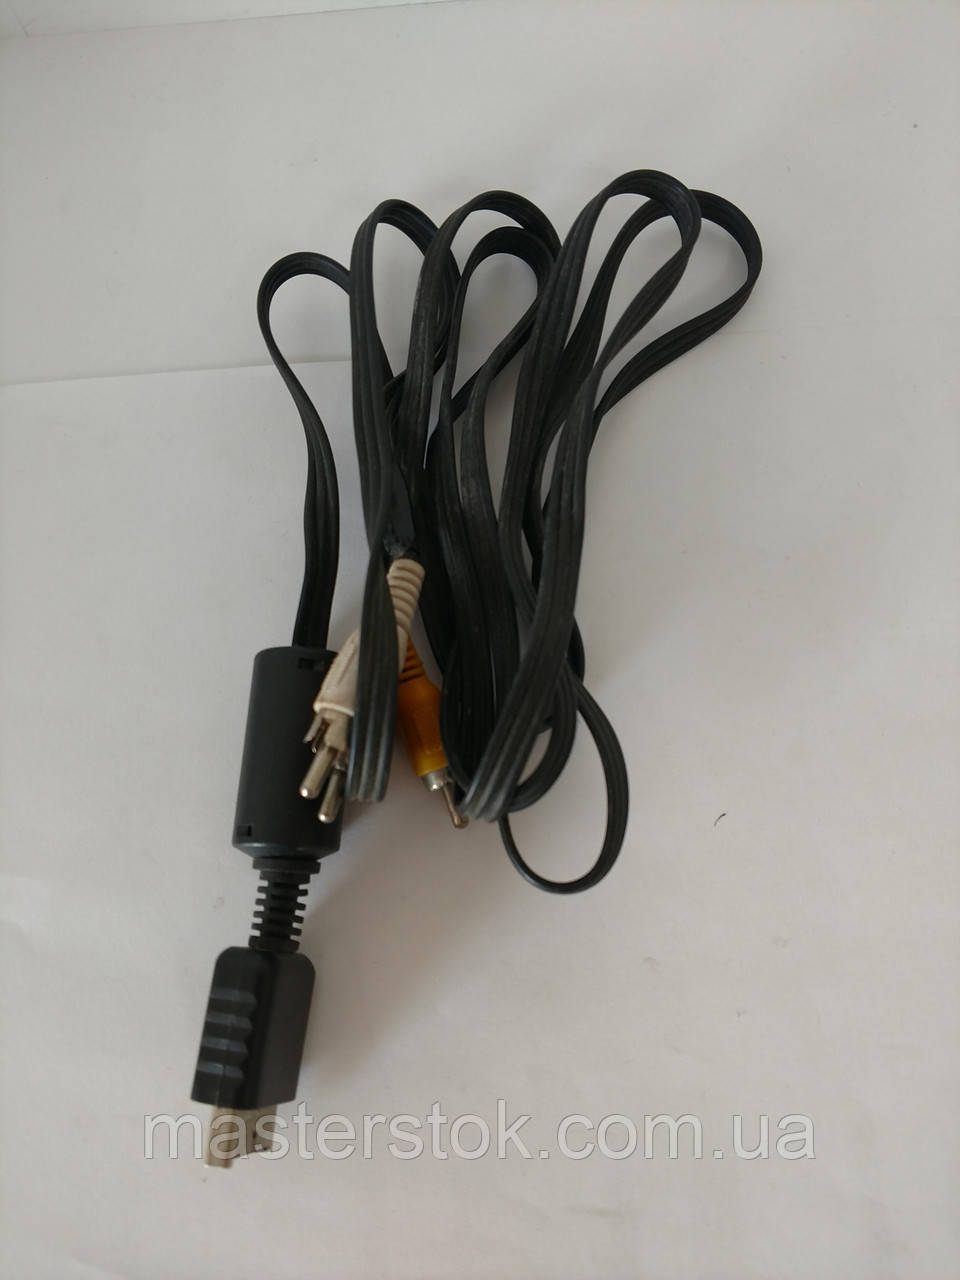 Композитный AV-кабель для приставок PS1,  PS2, PS3